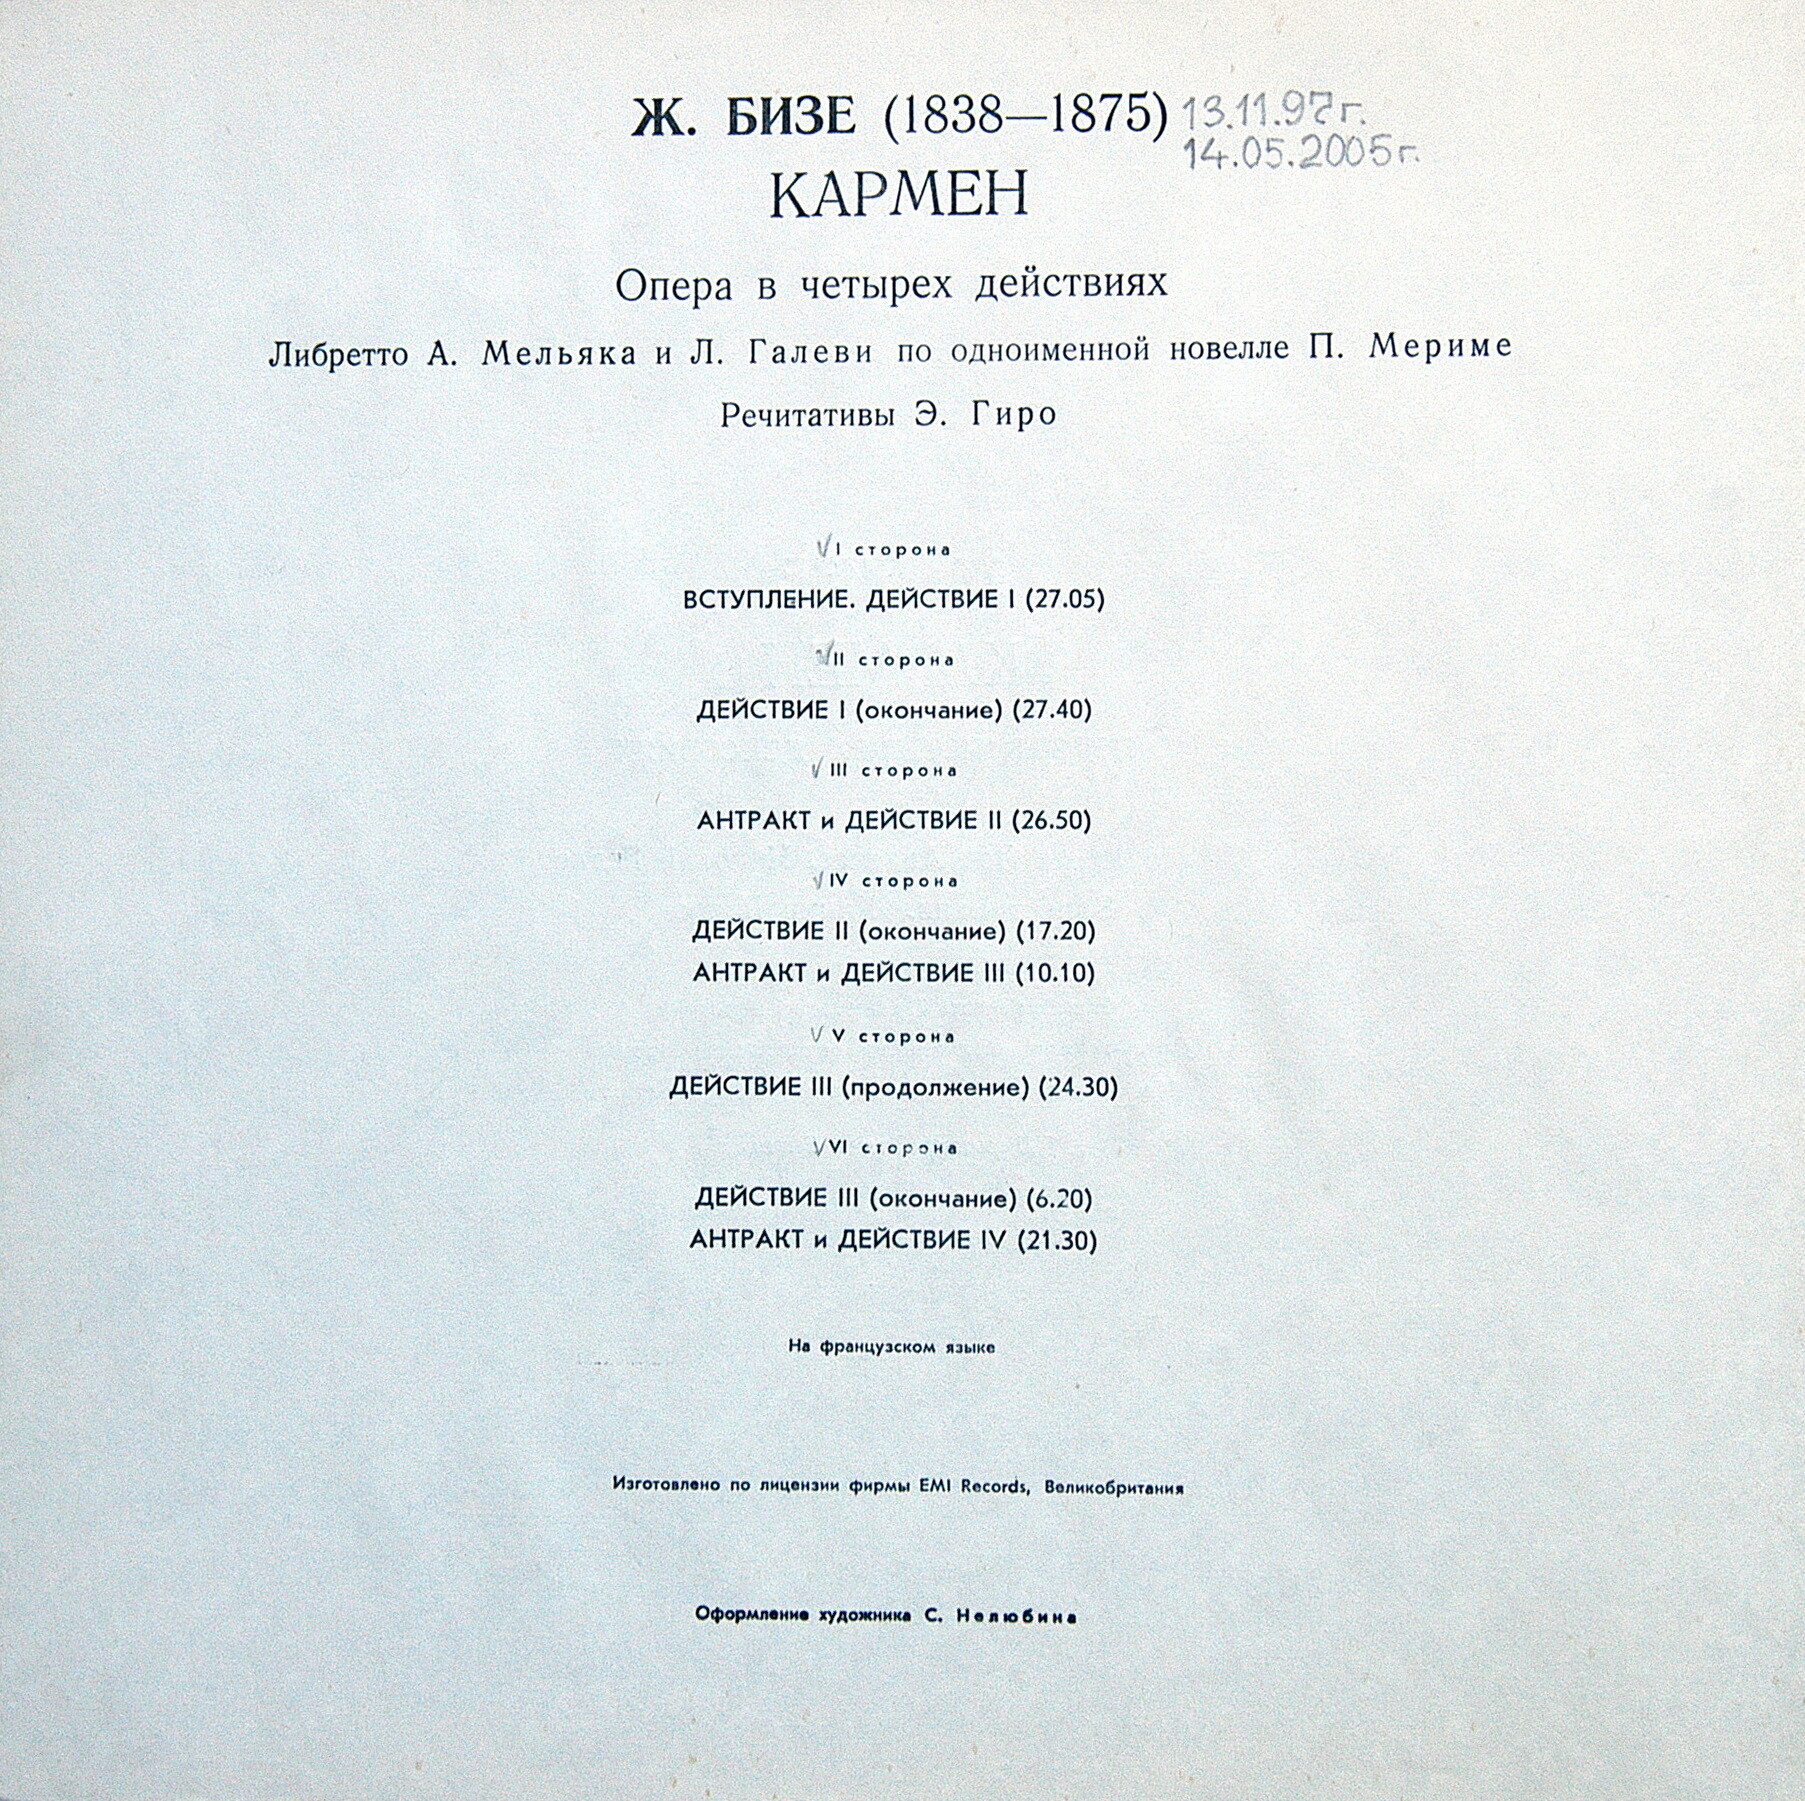 Ж. БИЗЕ (1838-1875): «КАРМЕН», опера в четырех действиях (на французском яз.)